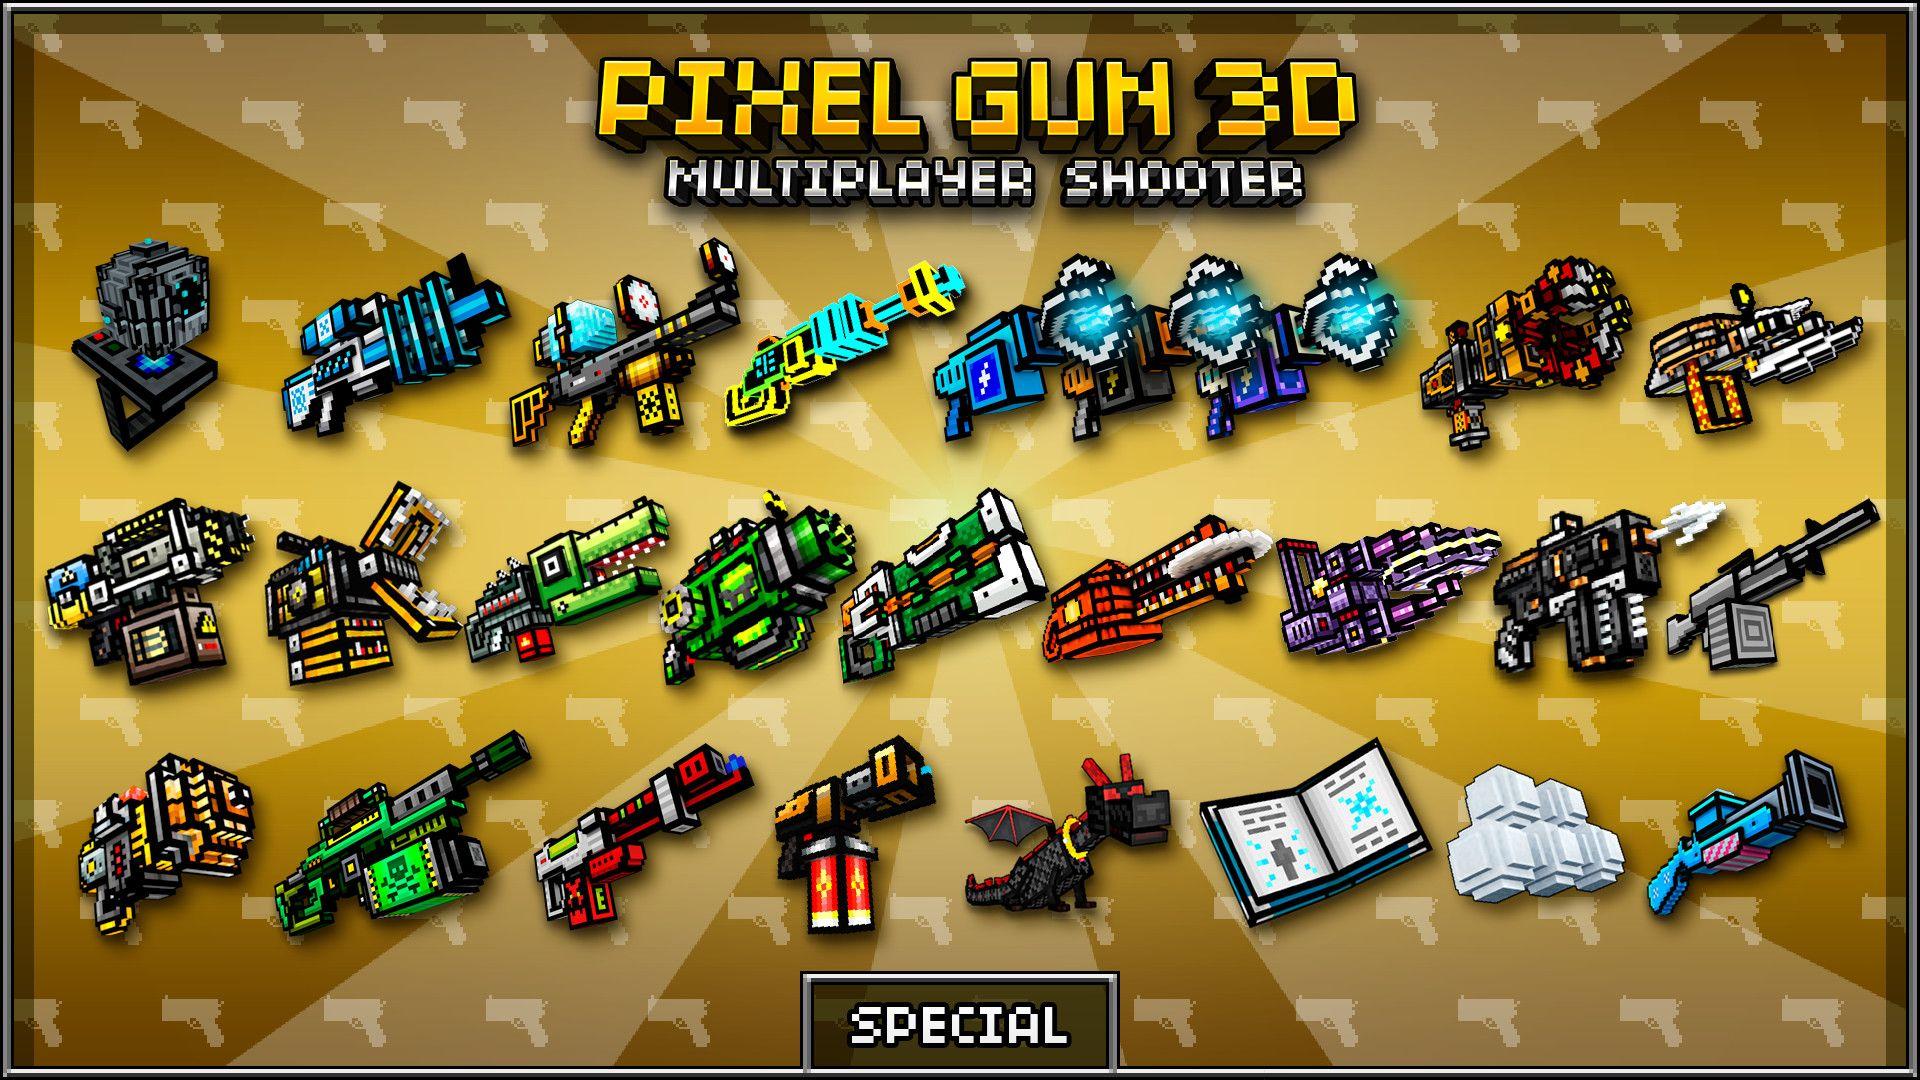 Pixel gun 3d